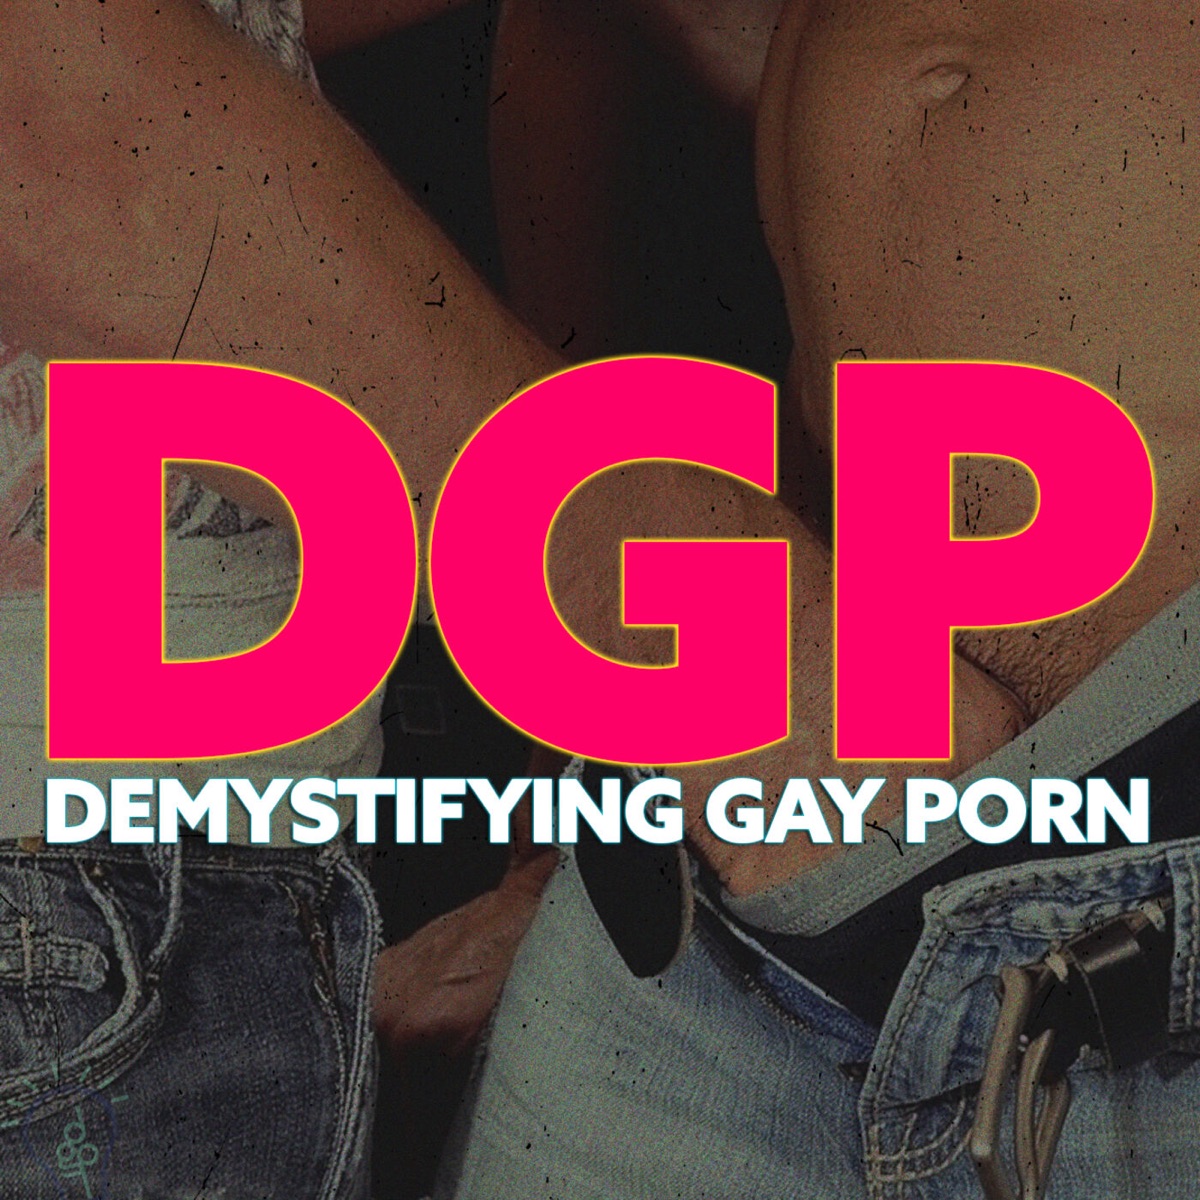 1200px x 1200px - Demystifying Gay Porn â€“ Podcast â€“ Podtail